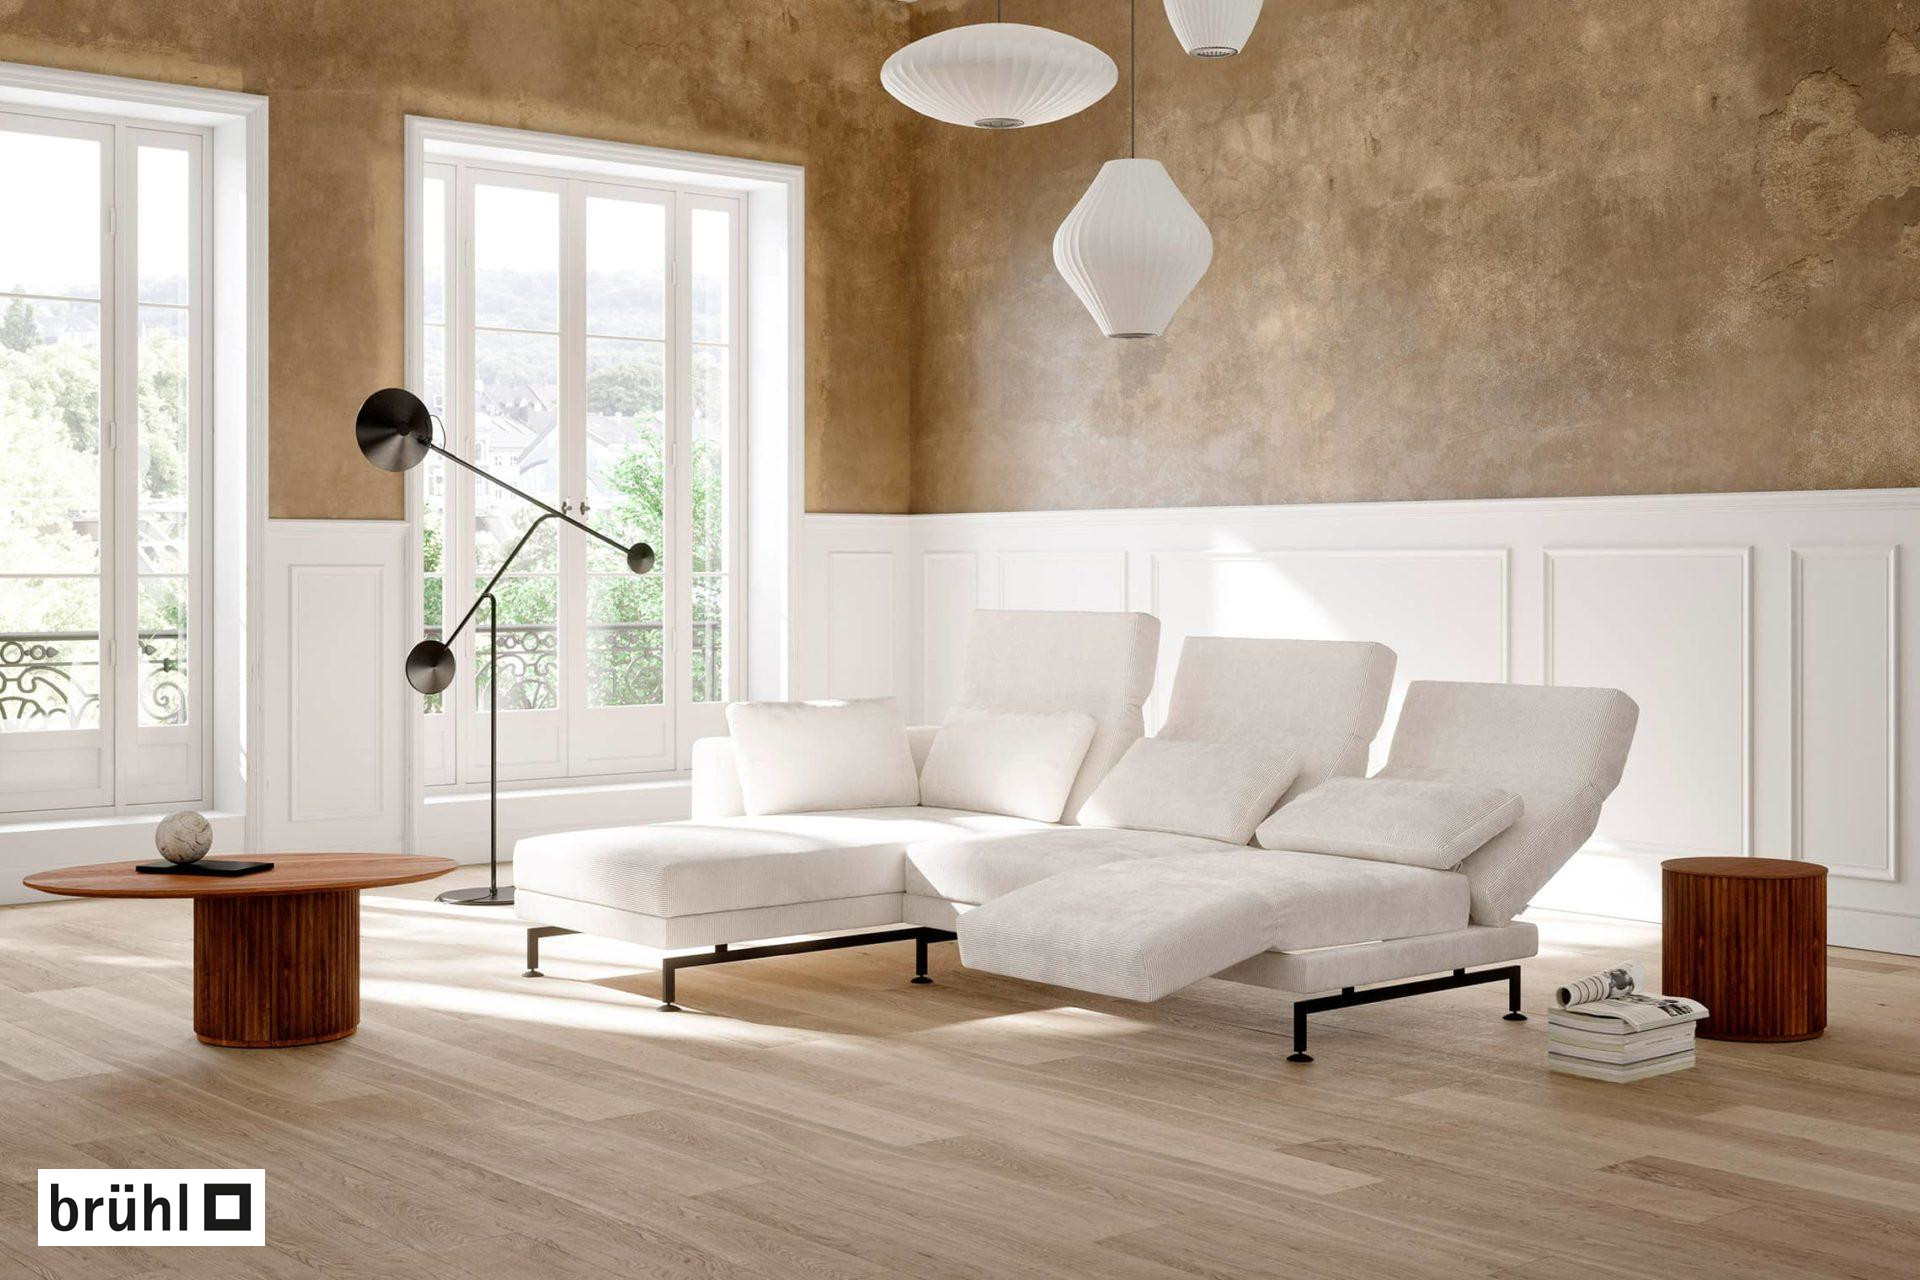 moule-Polstergarnituren der Marke brühl – moderne Designer-Sitzmöbel, erhältlich in Ihrem Möbelhaus bei Würzburg